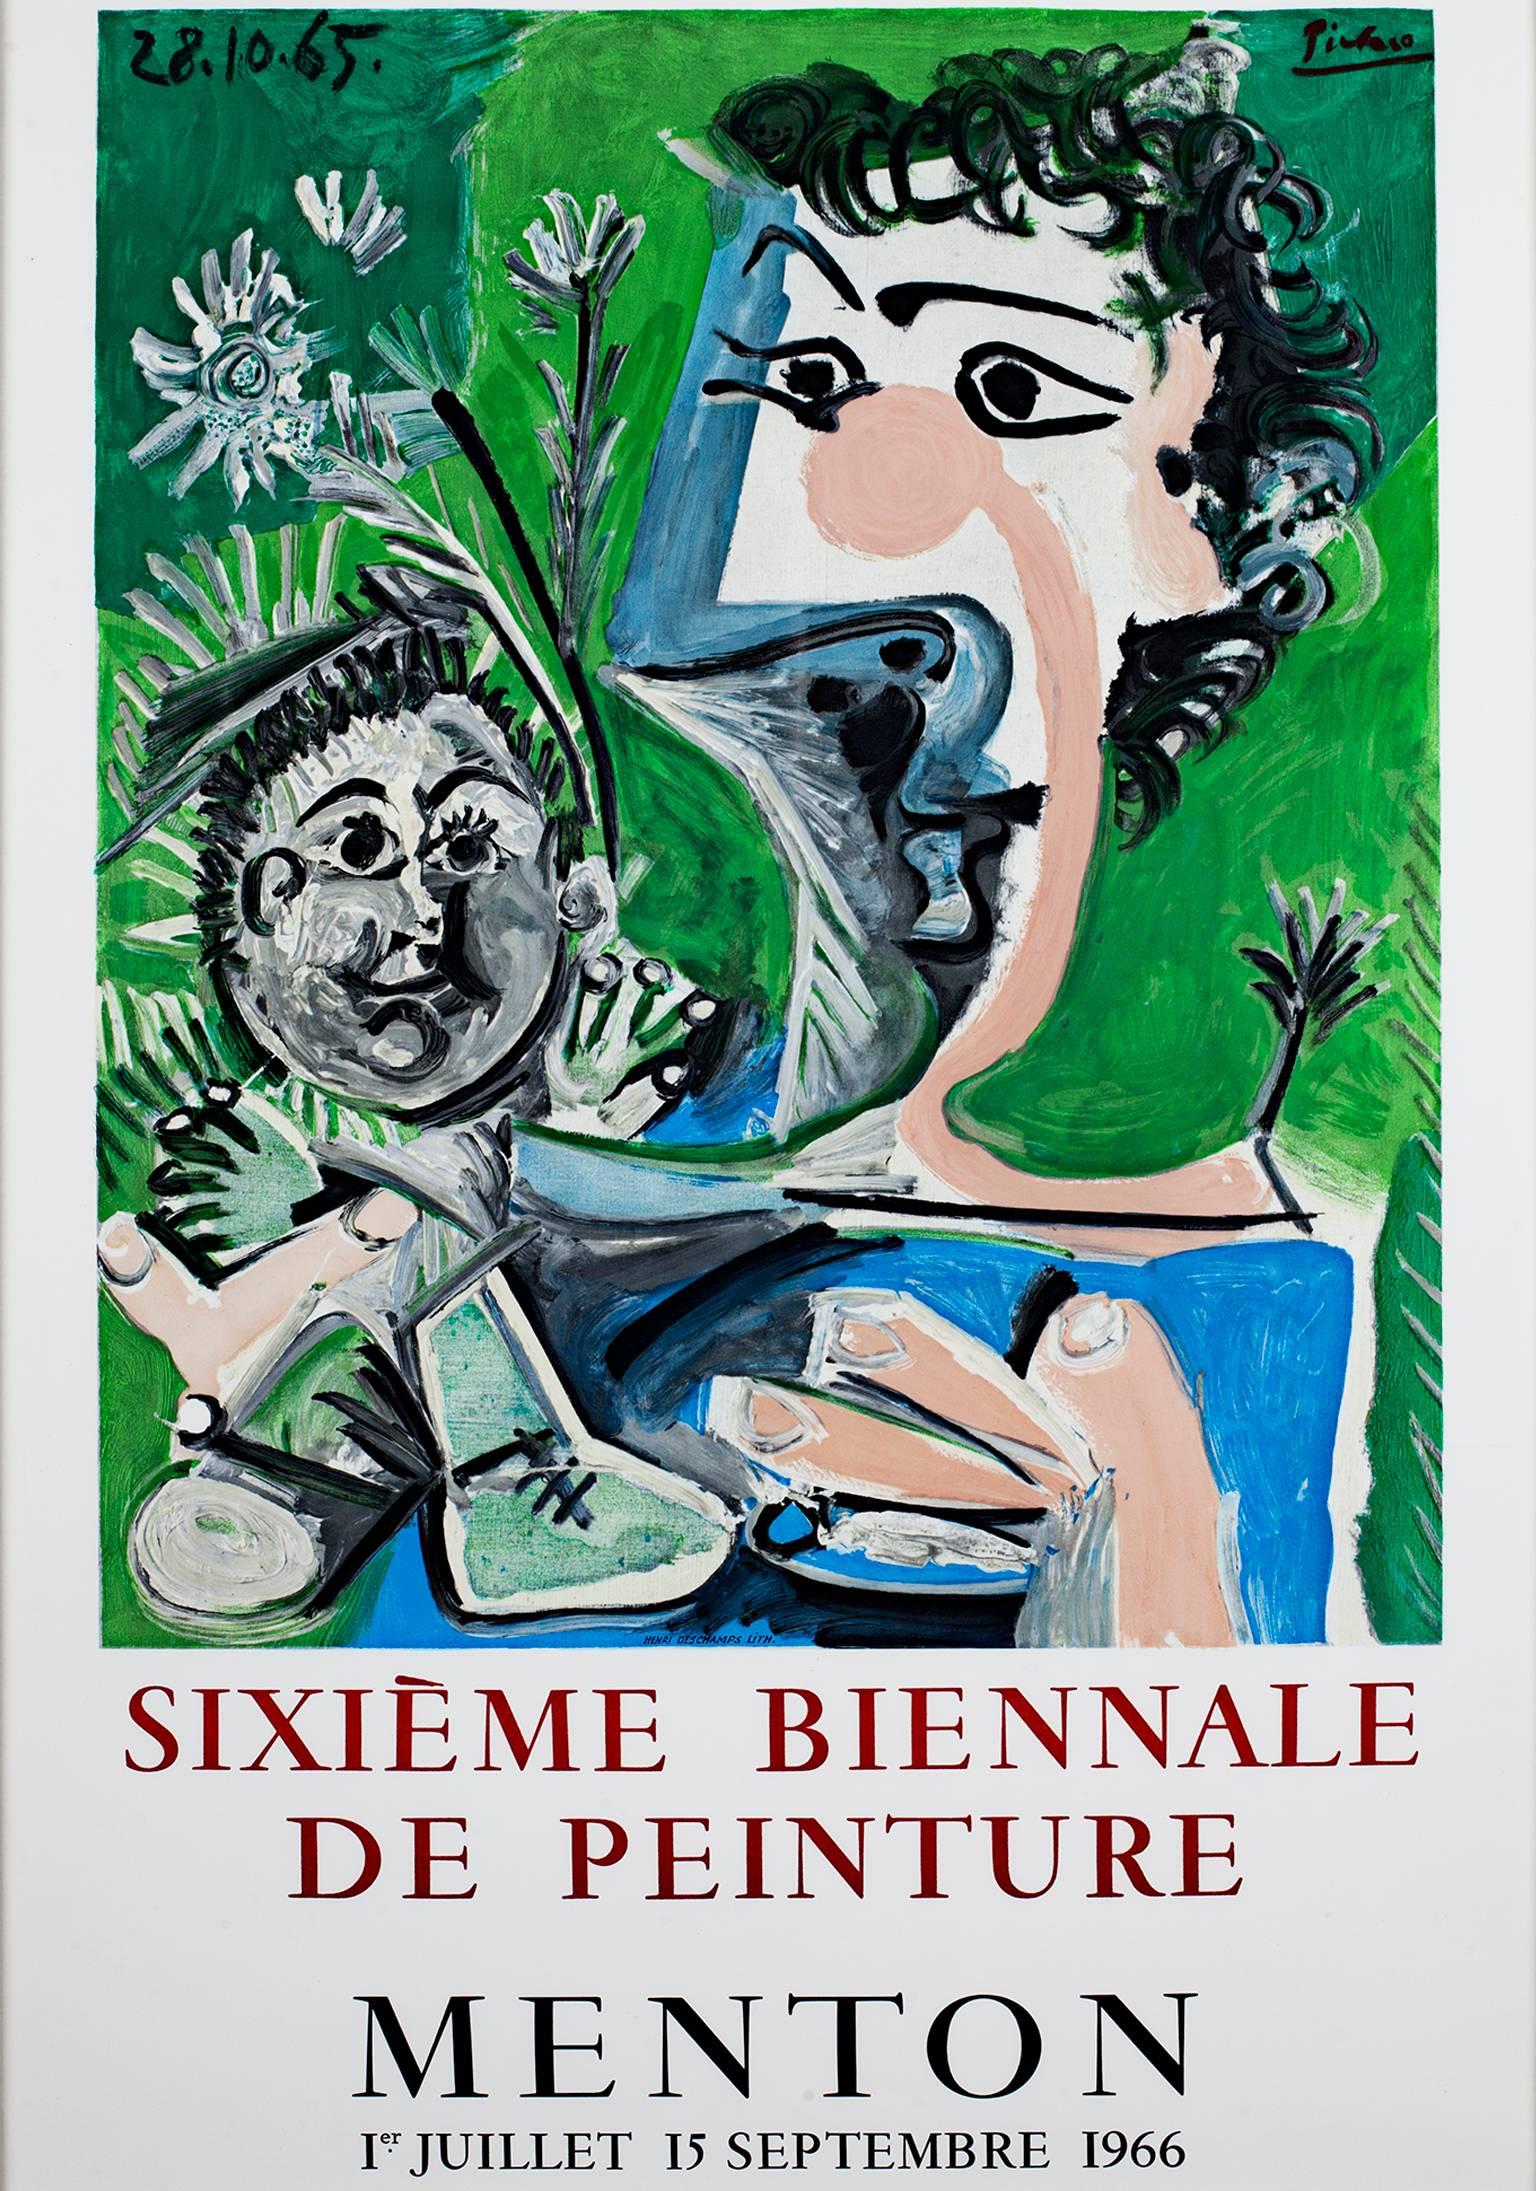 (after) Pablo Picasso Figurative Print – ""Sixieme Biennale de Peinture", Original lithografisches Vintage-Poster 